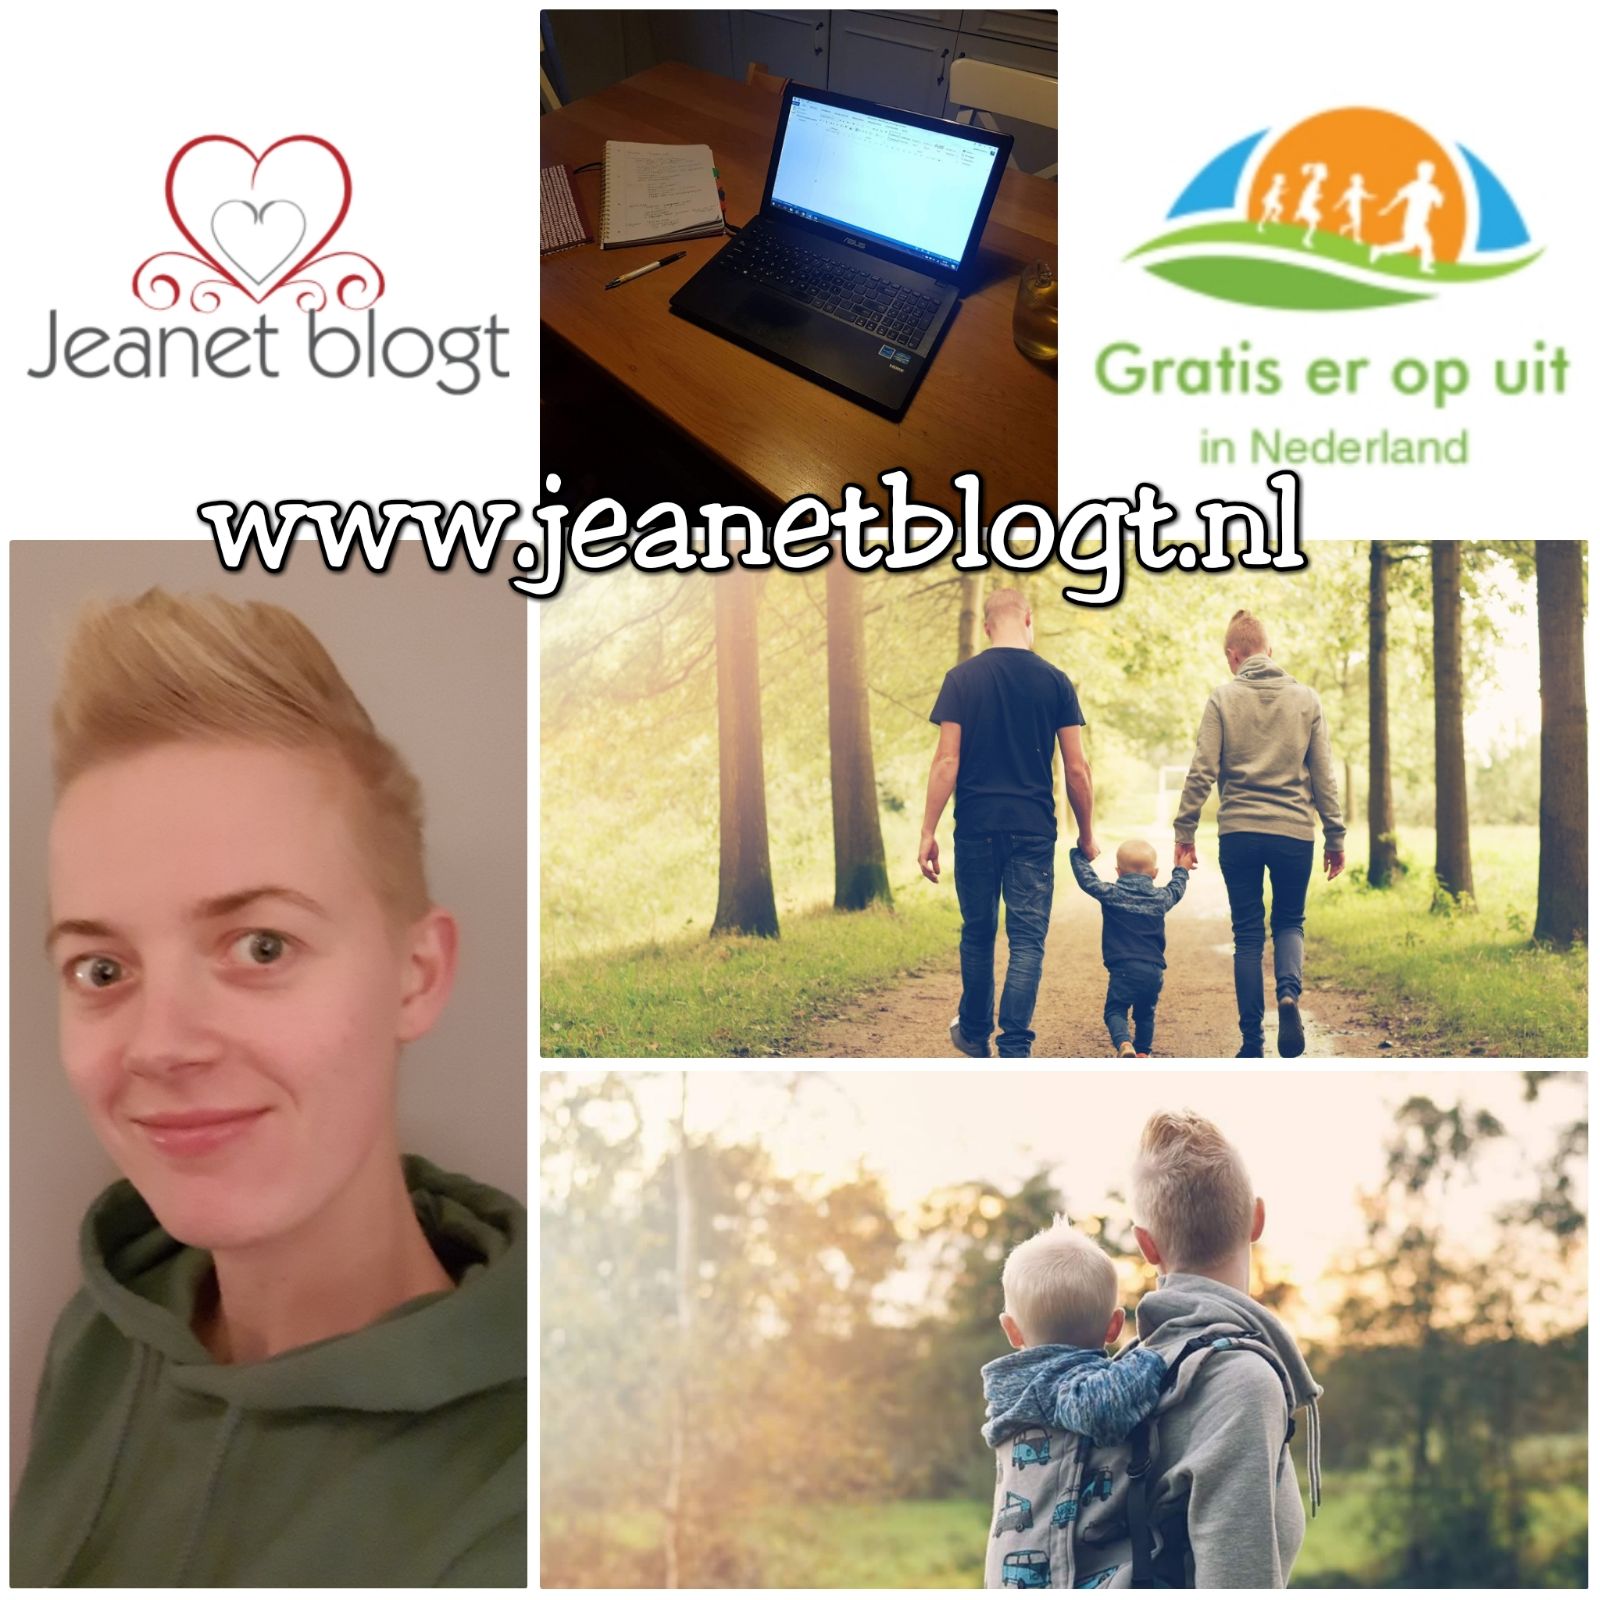 Jeanetblogt.nl bestaat een maand.